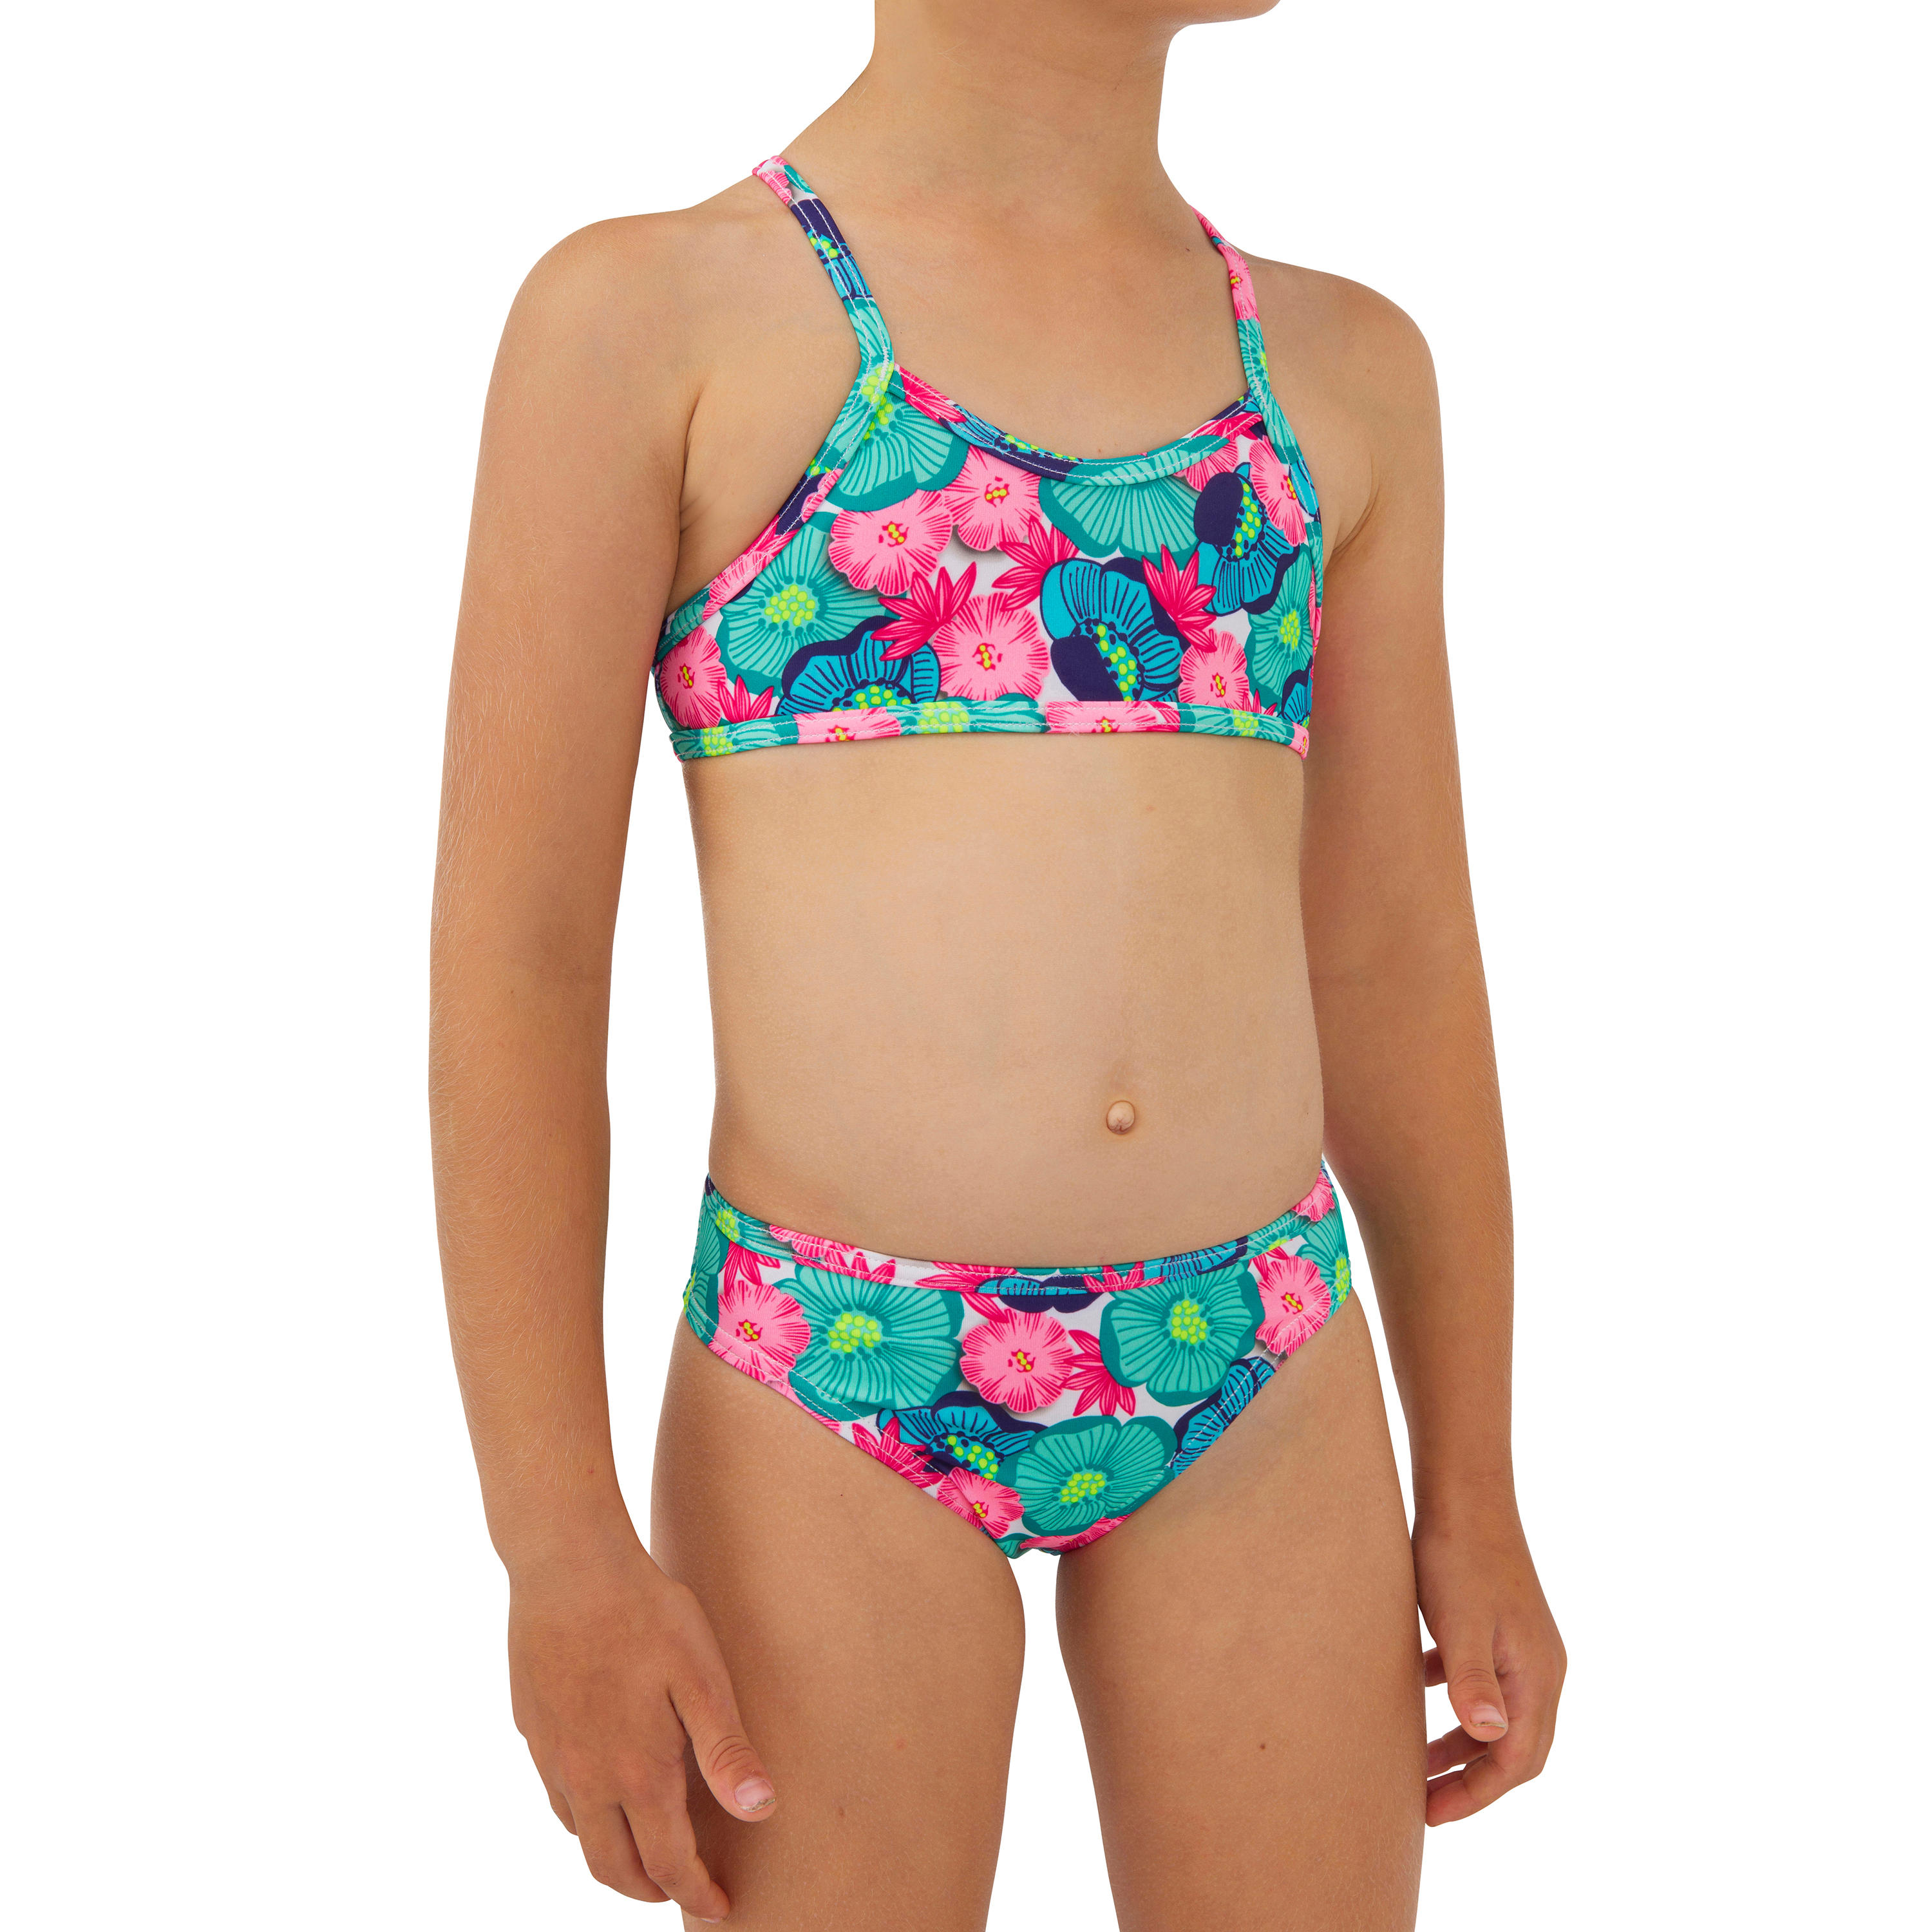 OLAIAN Bikini-Set Mädchen 100 Boni Naka grün/pink Gr. 104 - 4 Jahre